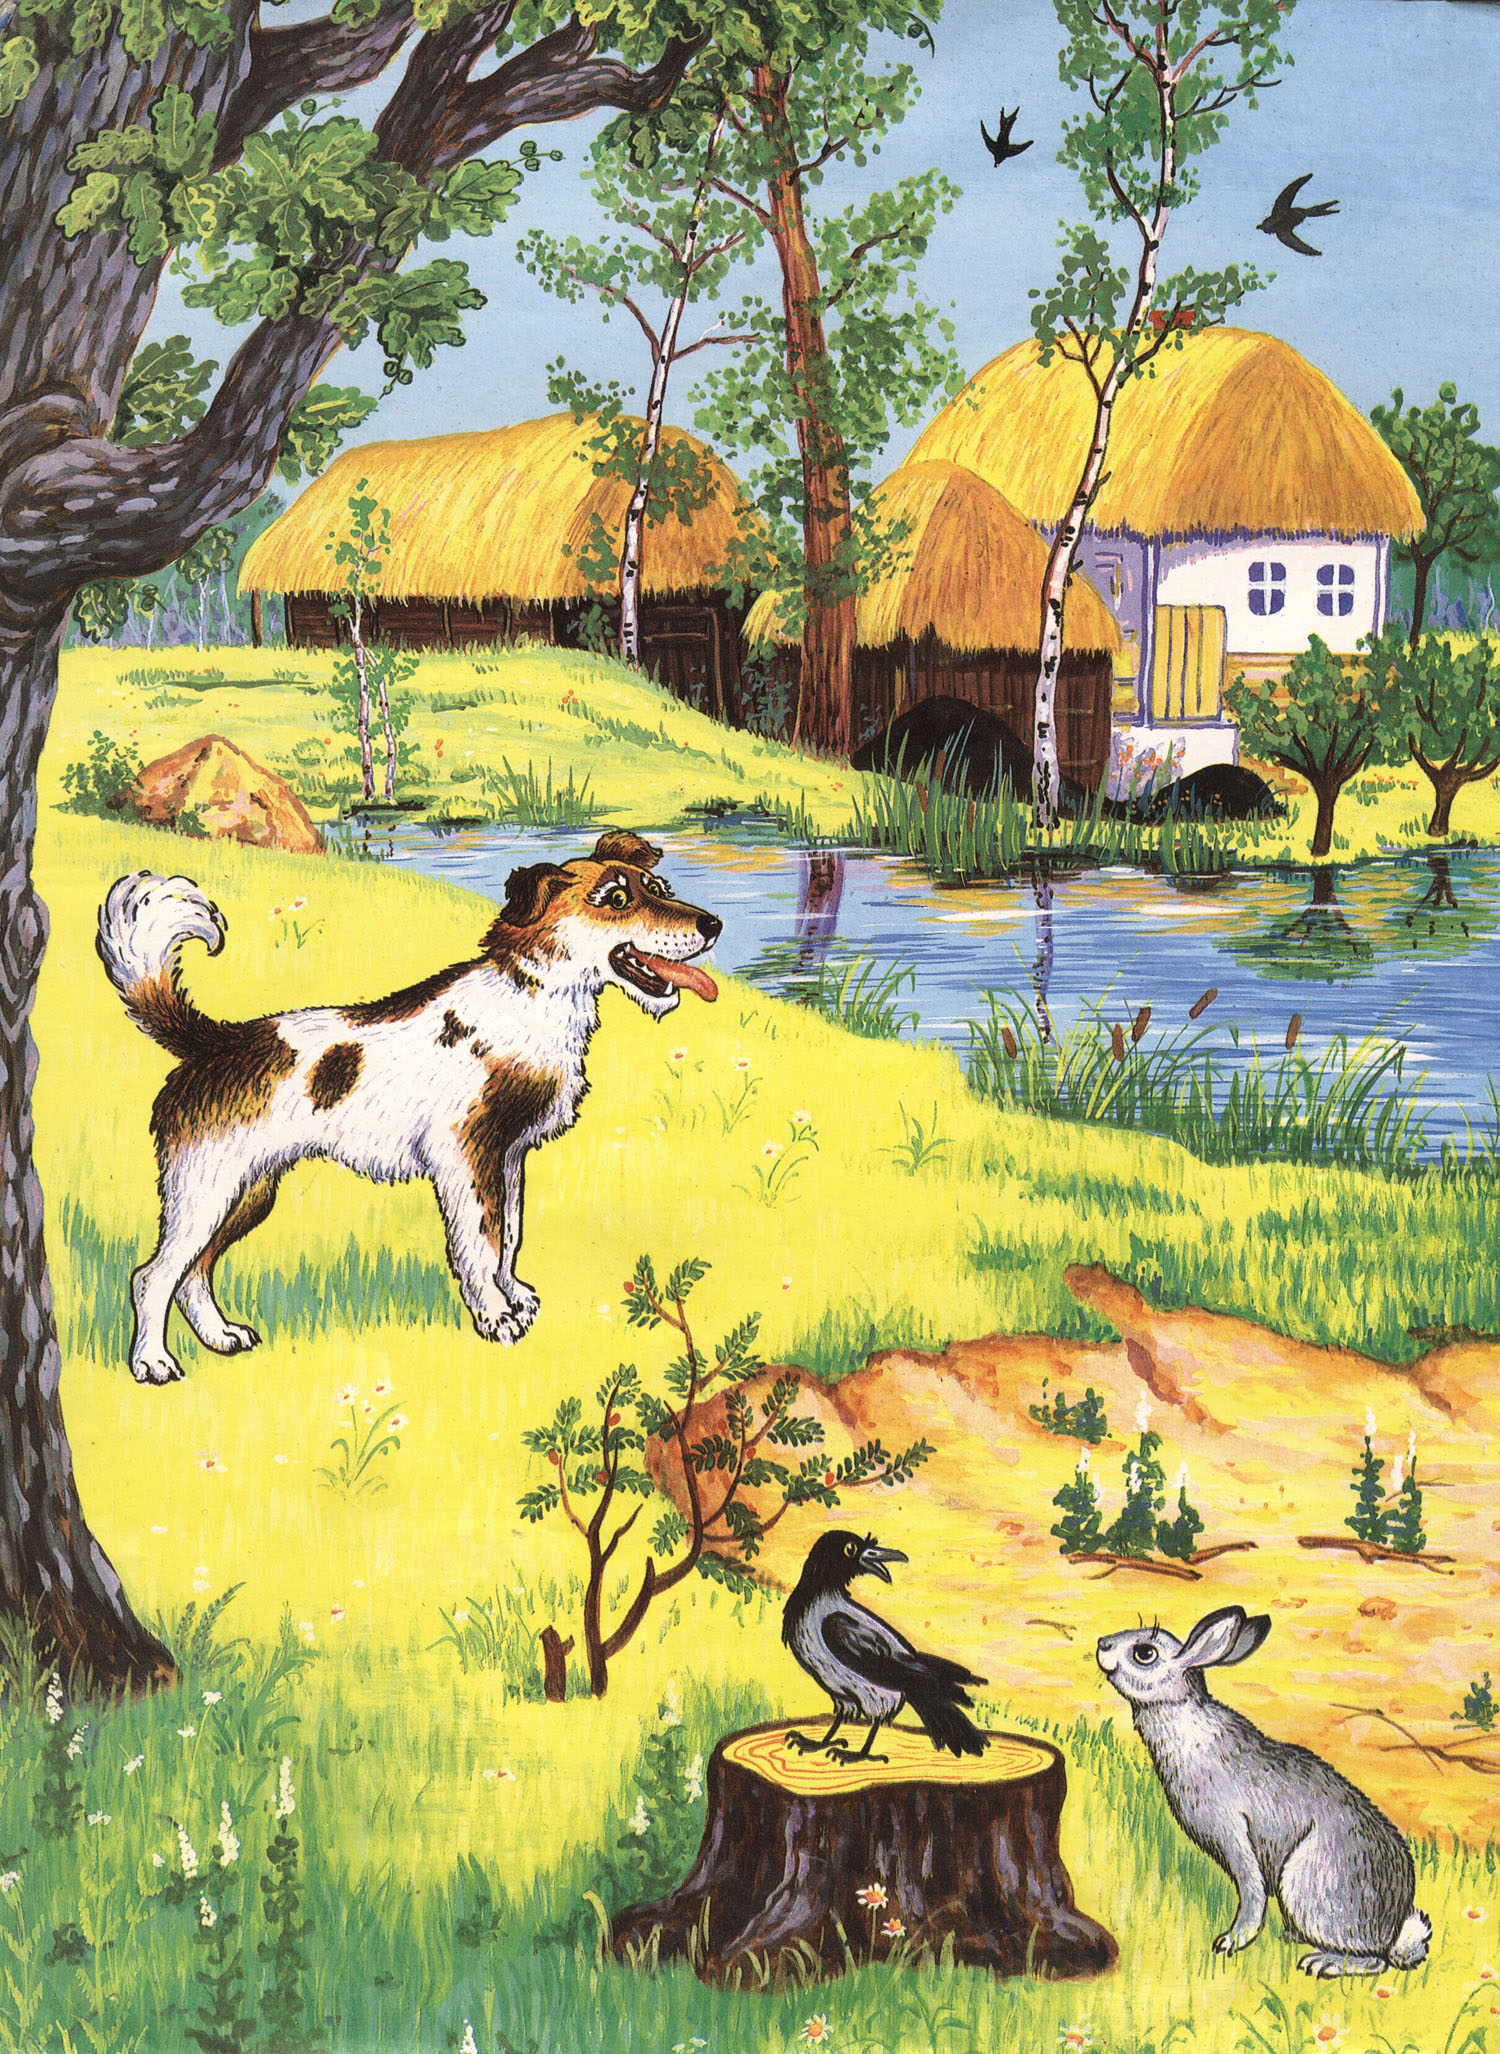 "Жил-был пёс". Украинская народная сказка. Иллюстрации Е. Дидковской.